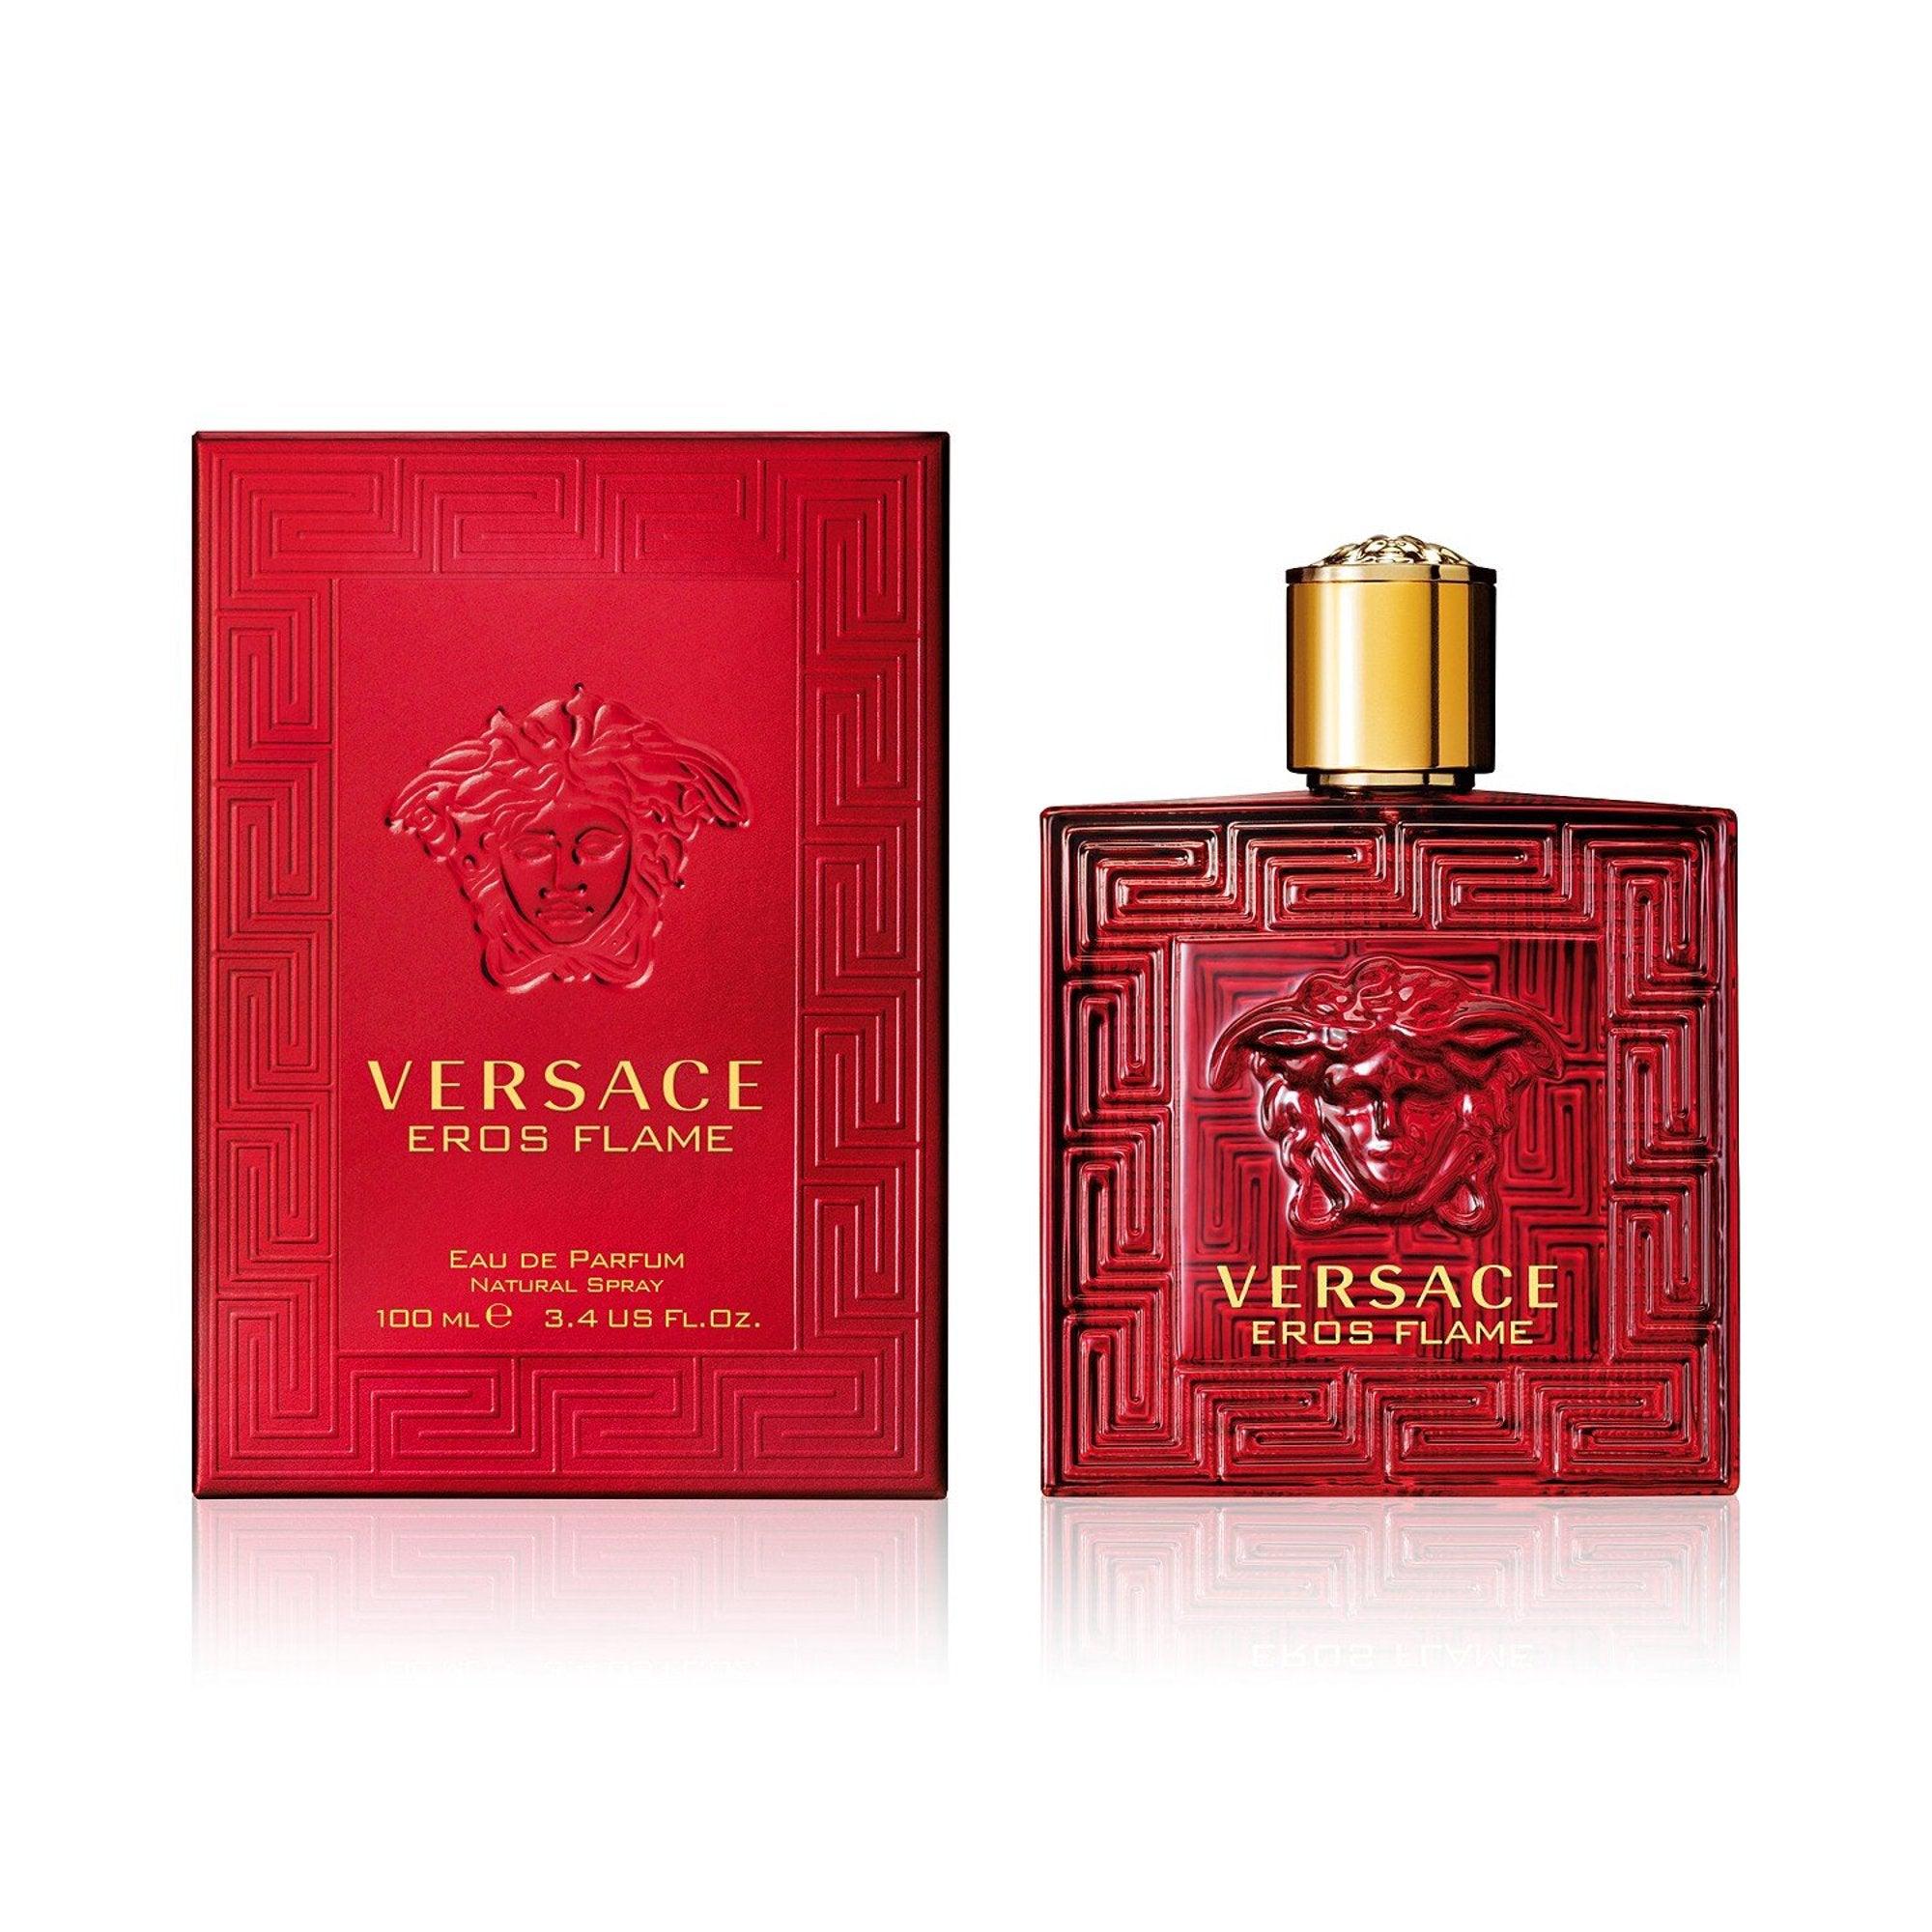 VERSACE EROS FLAME EAU DE PARFUM FOR MEN - Parfum Gallerie